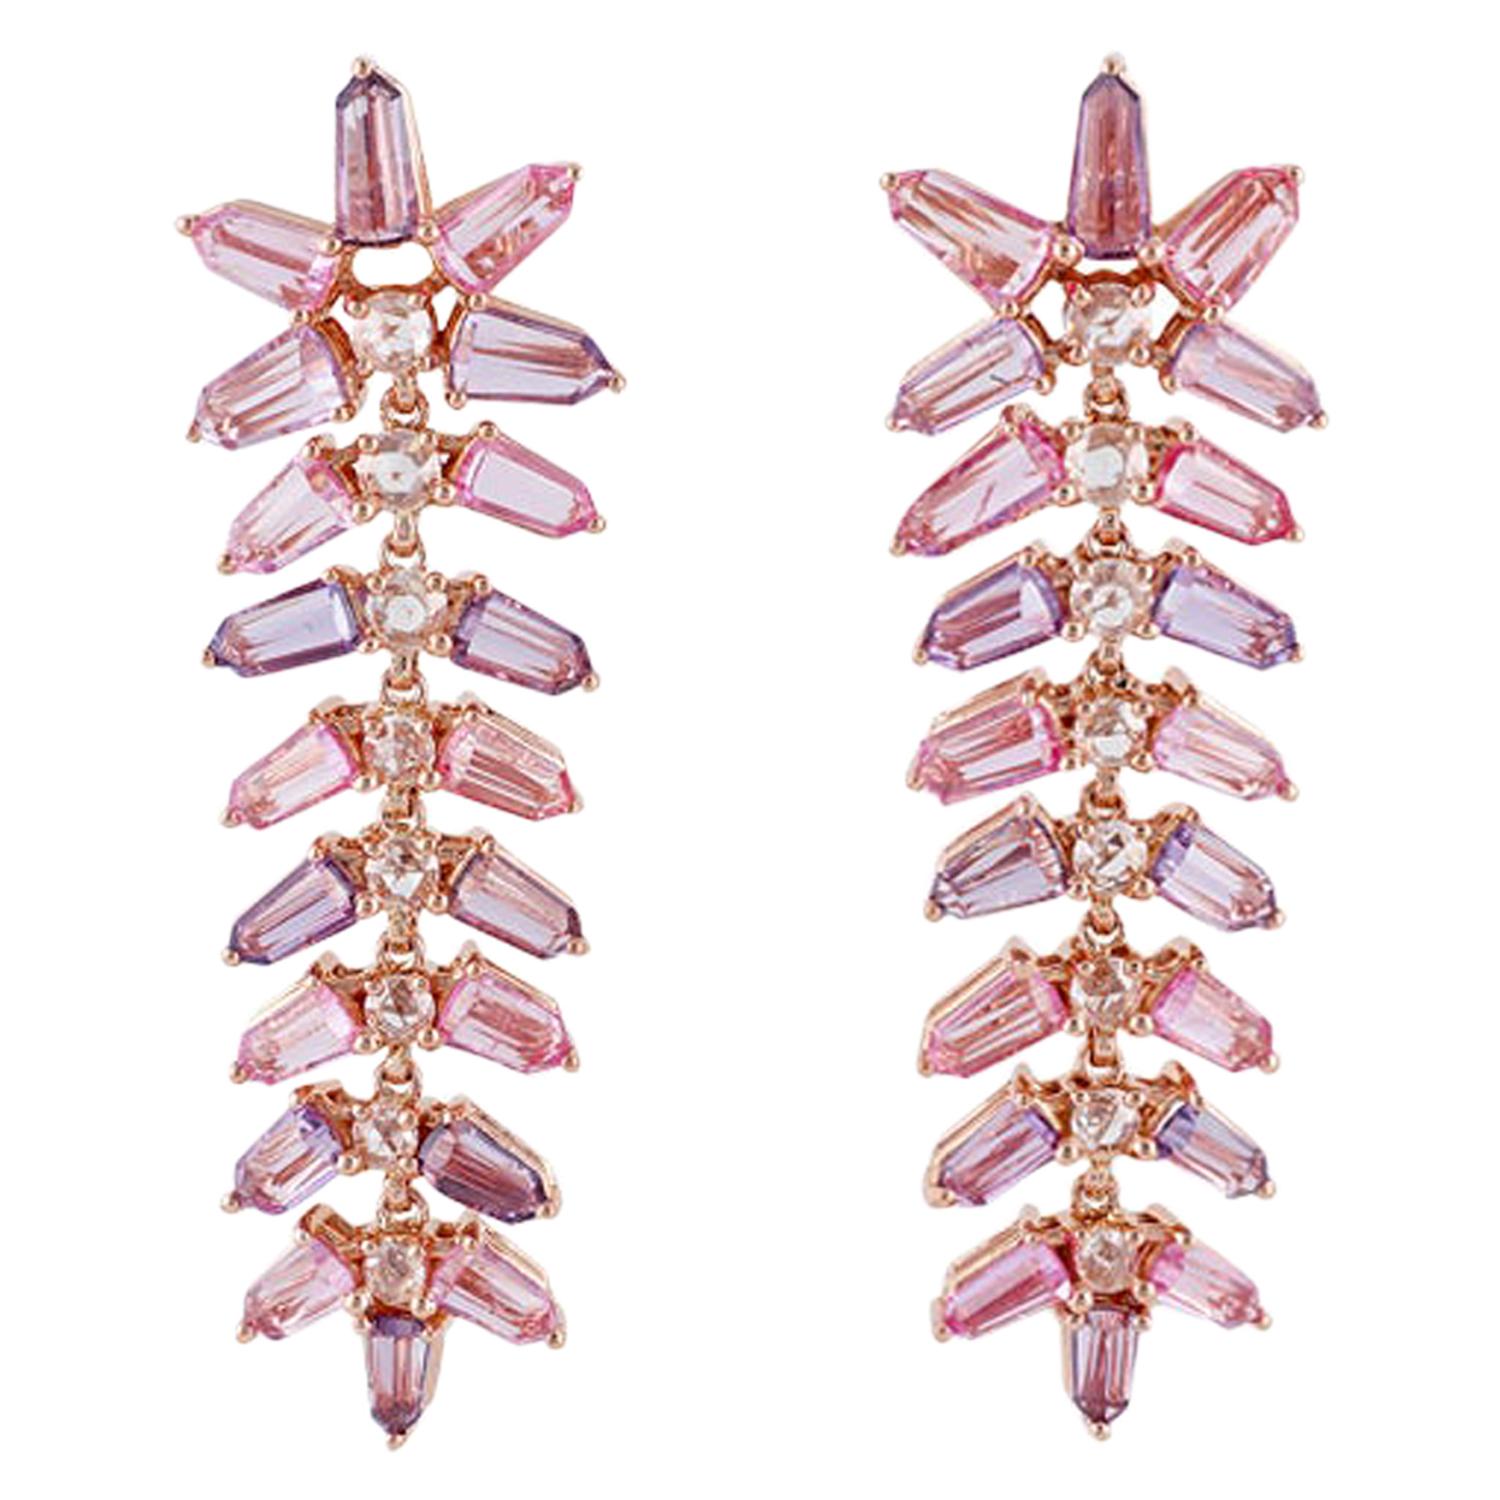 Boucles d'oreilles en or rose 18 carats avec saphirs roses et diamants cloutés